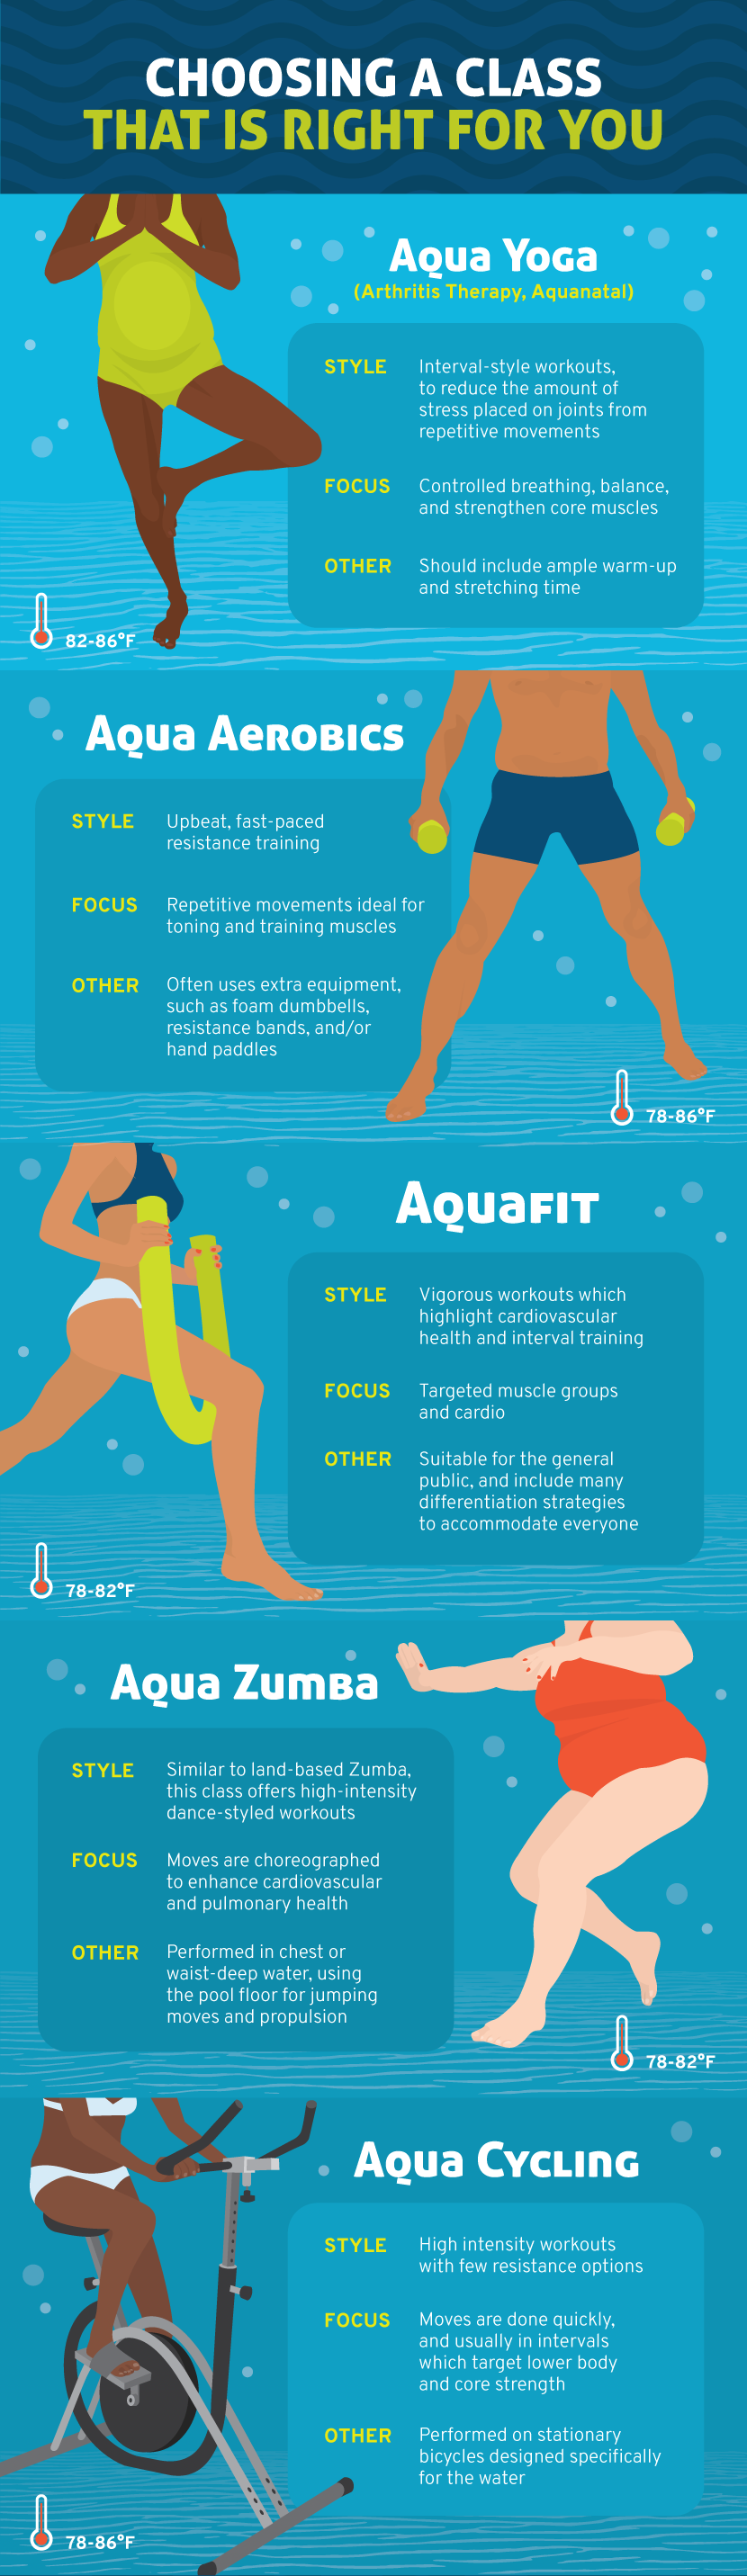 The Benefits of Regular Aquafit Sessions